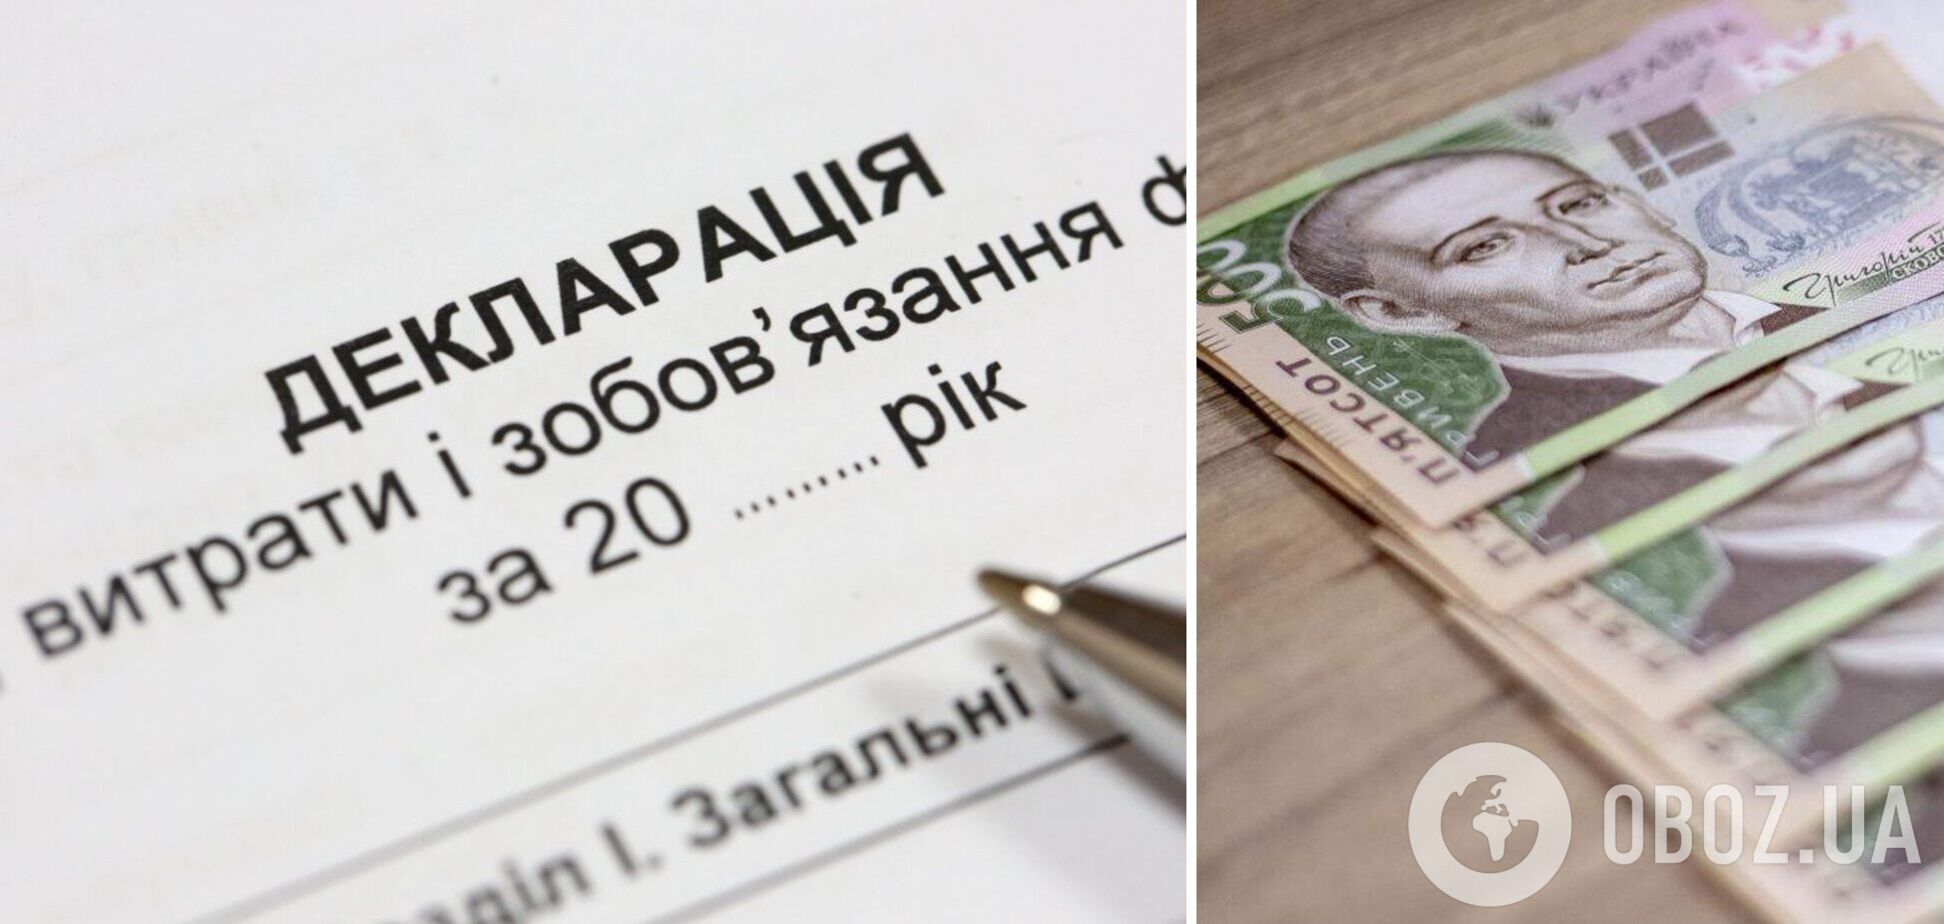 НАПК выявило нарушений на 380 млн грн в декларациях чиновников и должностных лиц